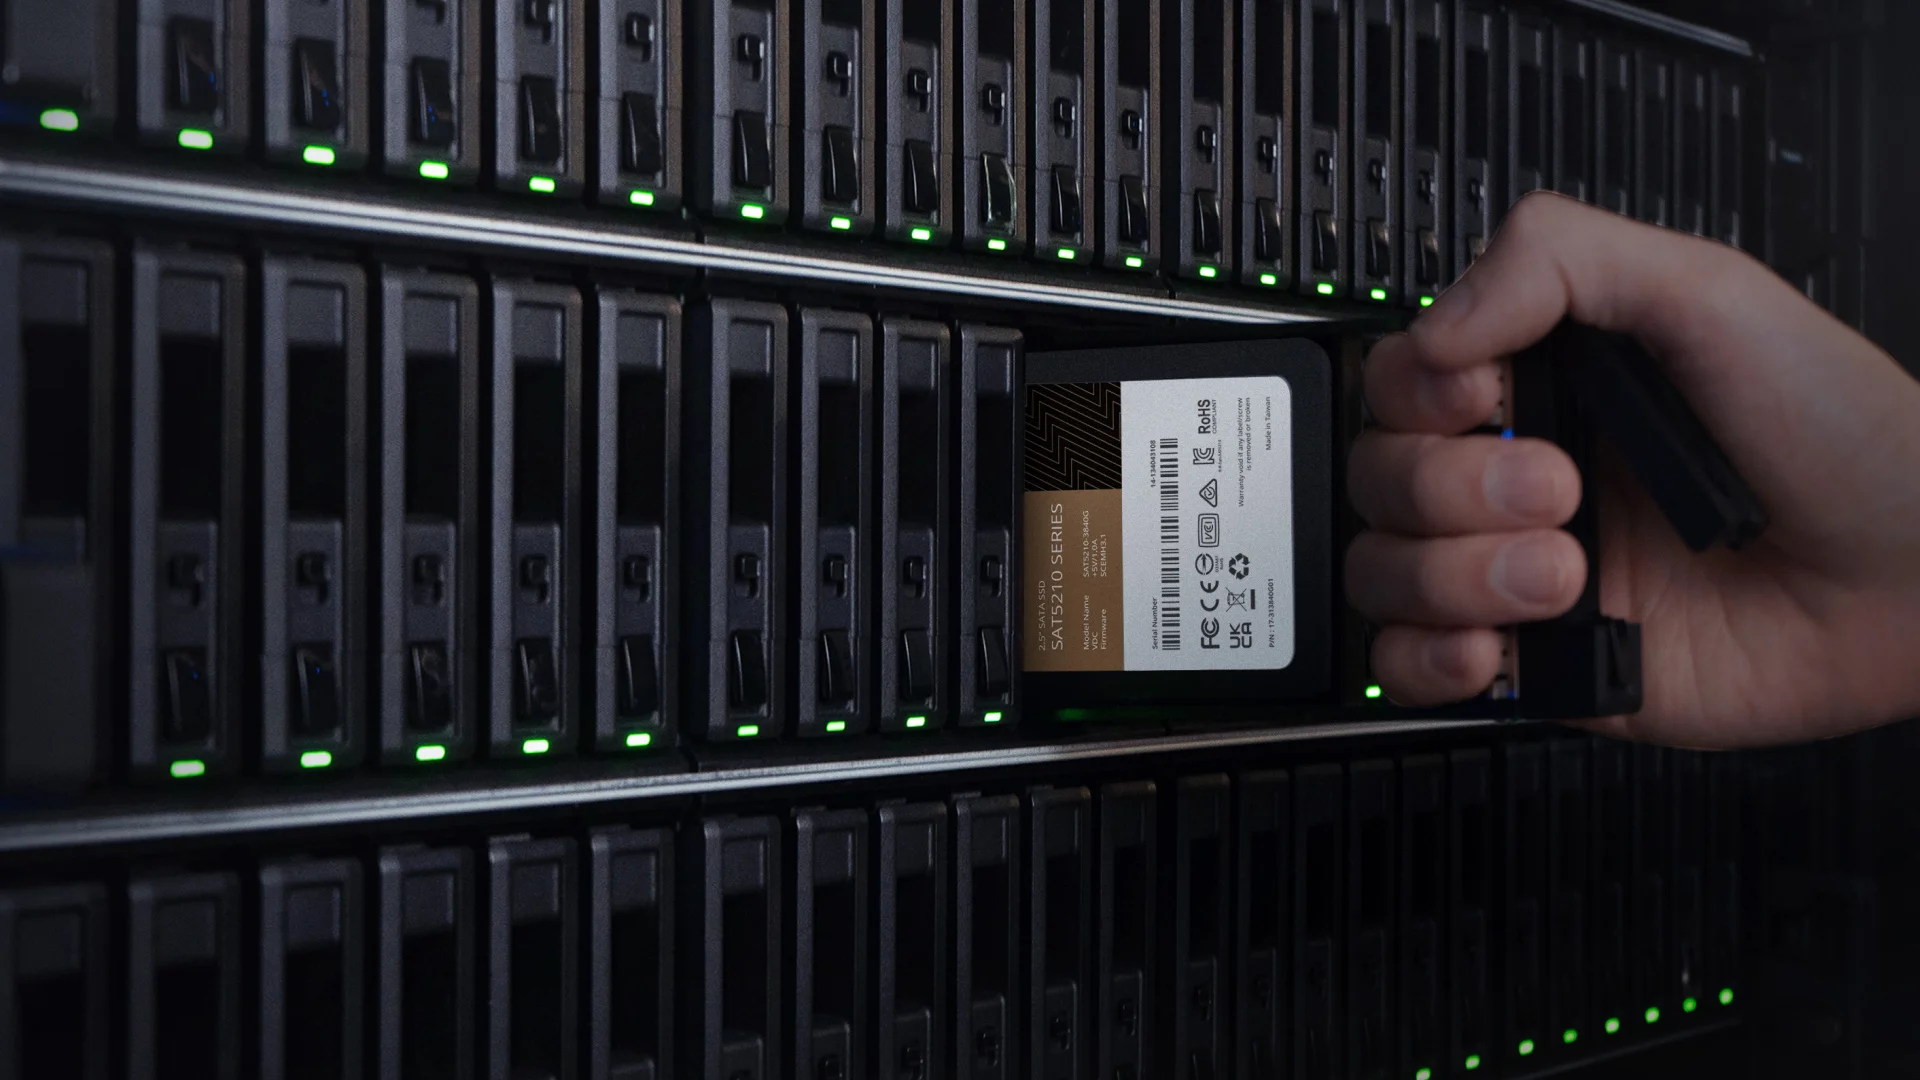 ổ cứng ssd synology sat5200 dành cho hệ thống server doanh nghiệp